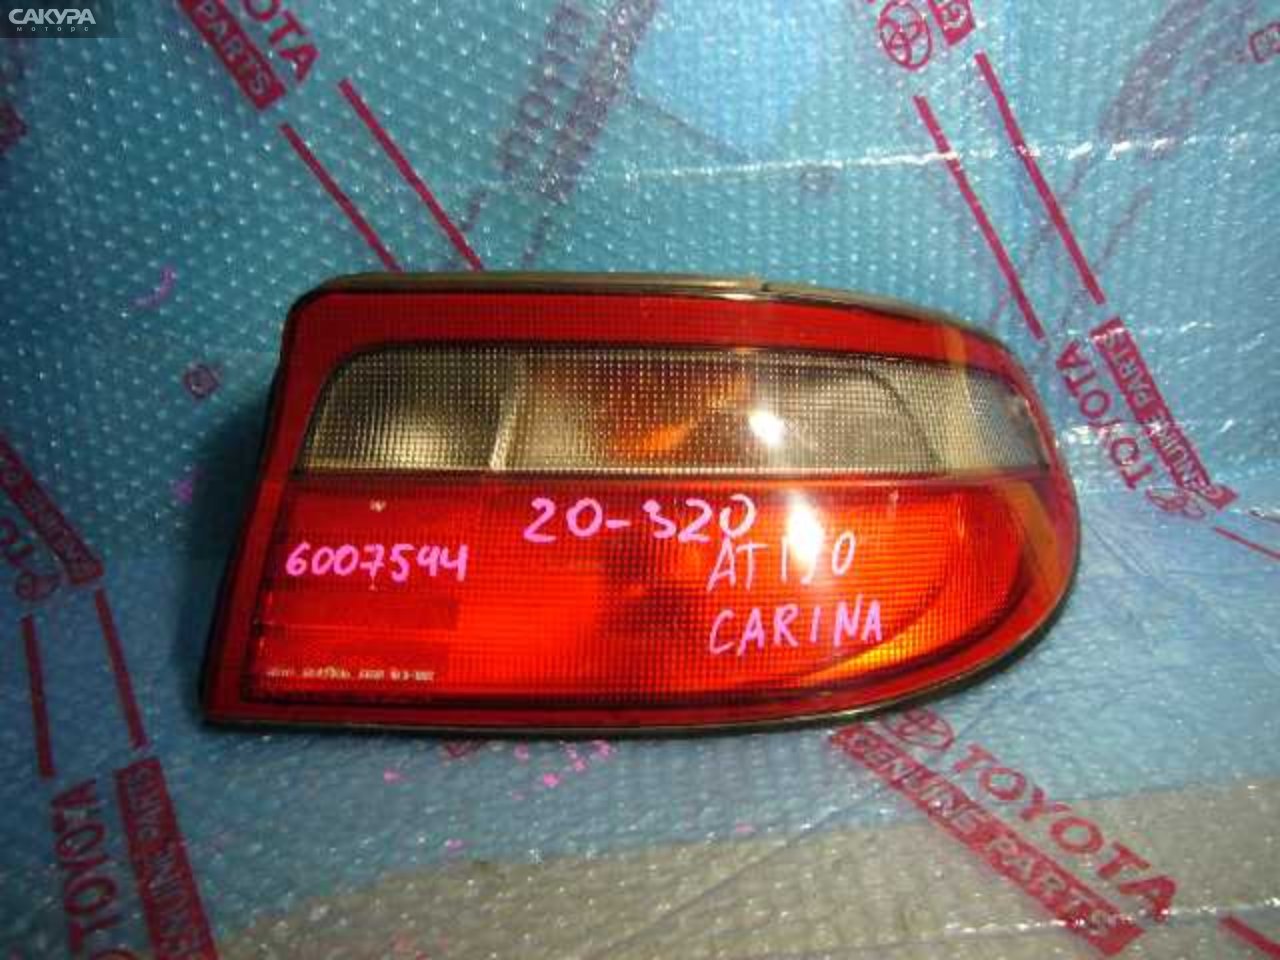 Фонарь стоп-сигнала правый Toyota Carina AT190 20-320: купить в Сакура Кемерово.